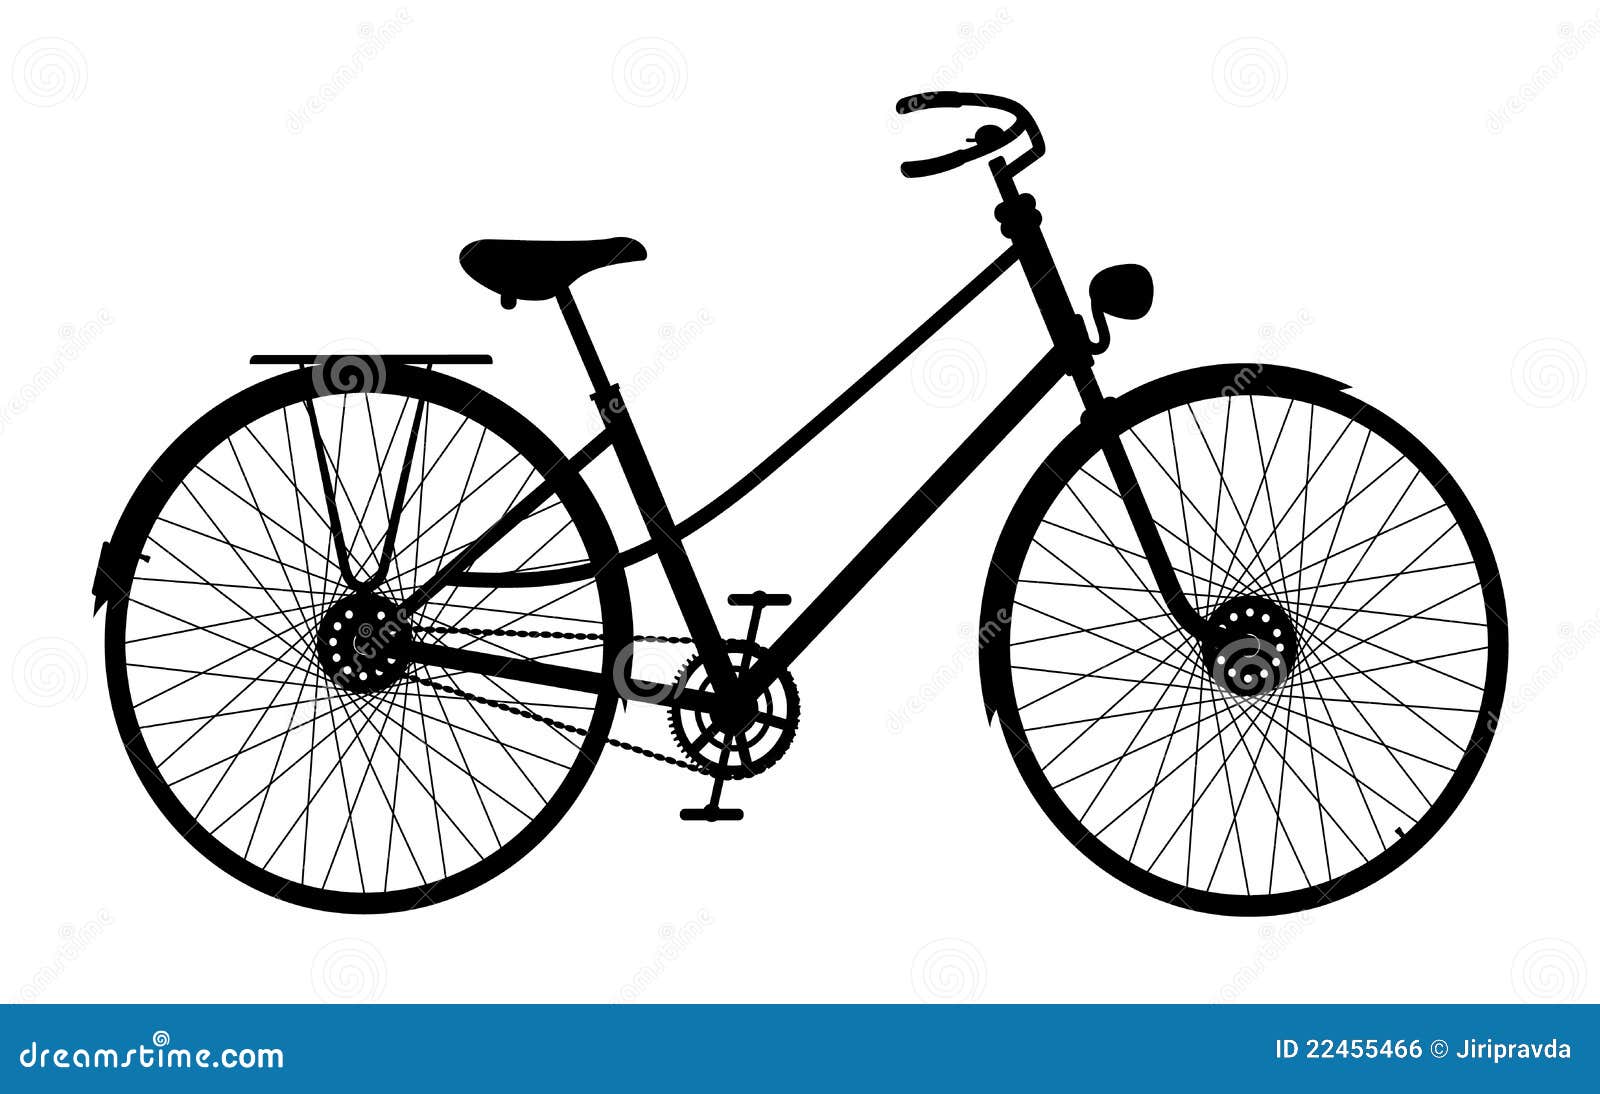 silhouiette et bicyclette